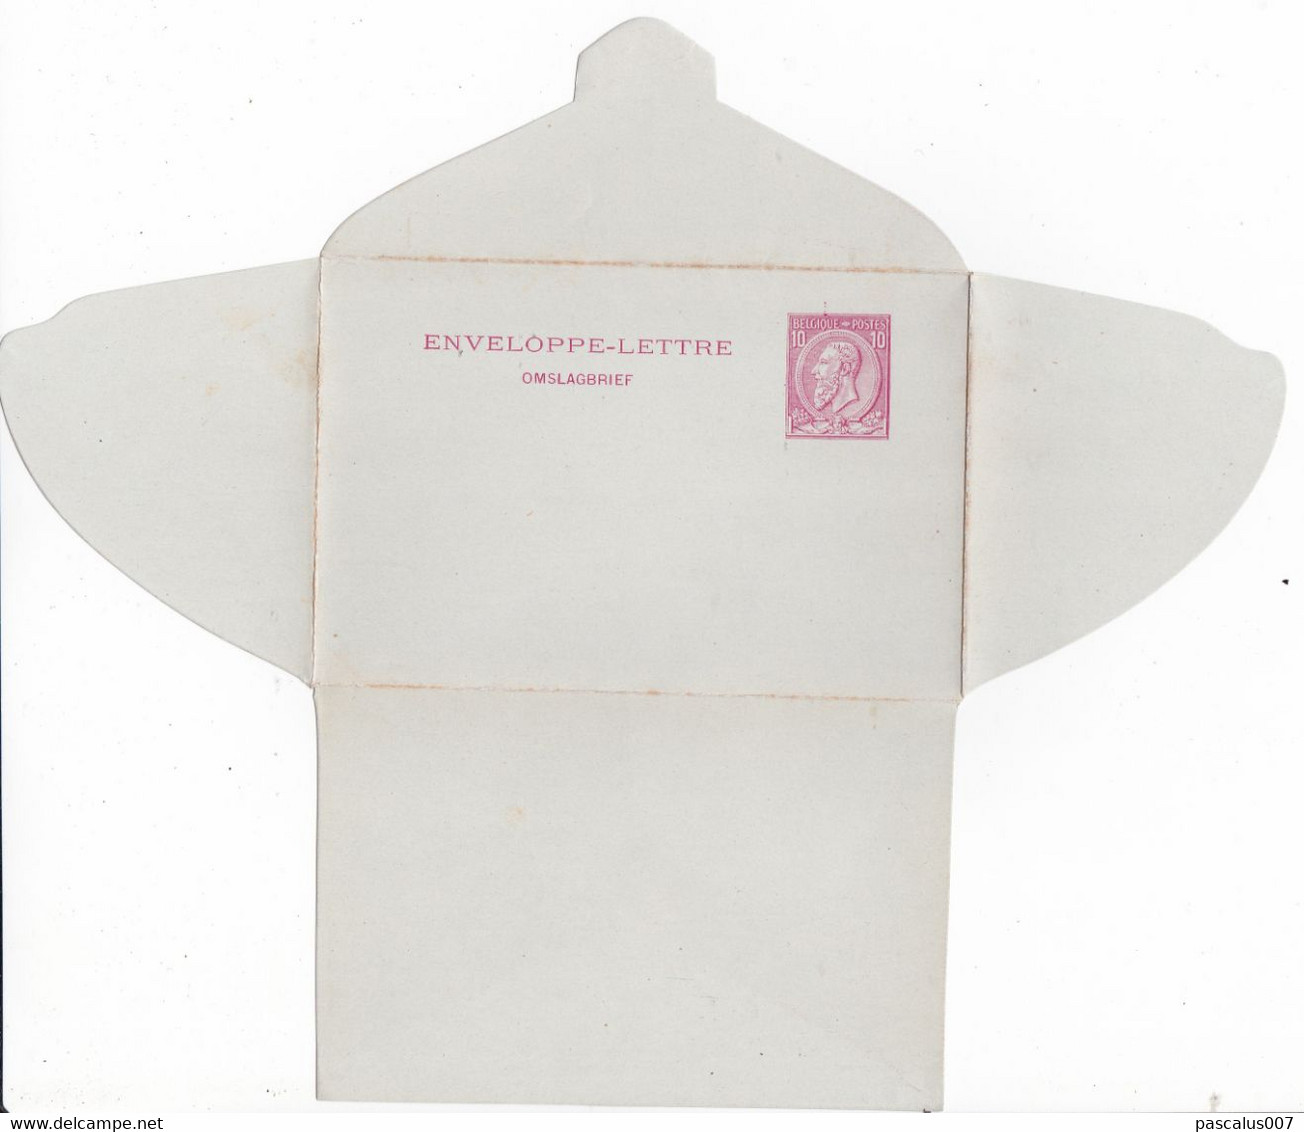 B01-419 Enveloppe-Lettre Vierge Entier Postal N° 1 - Briefumschläge